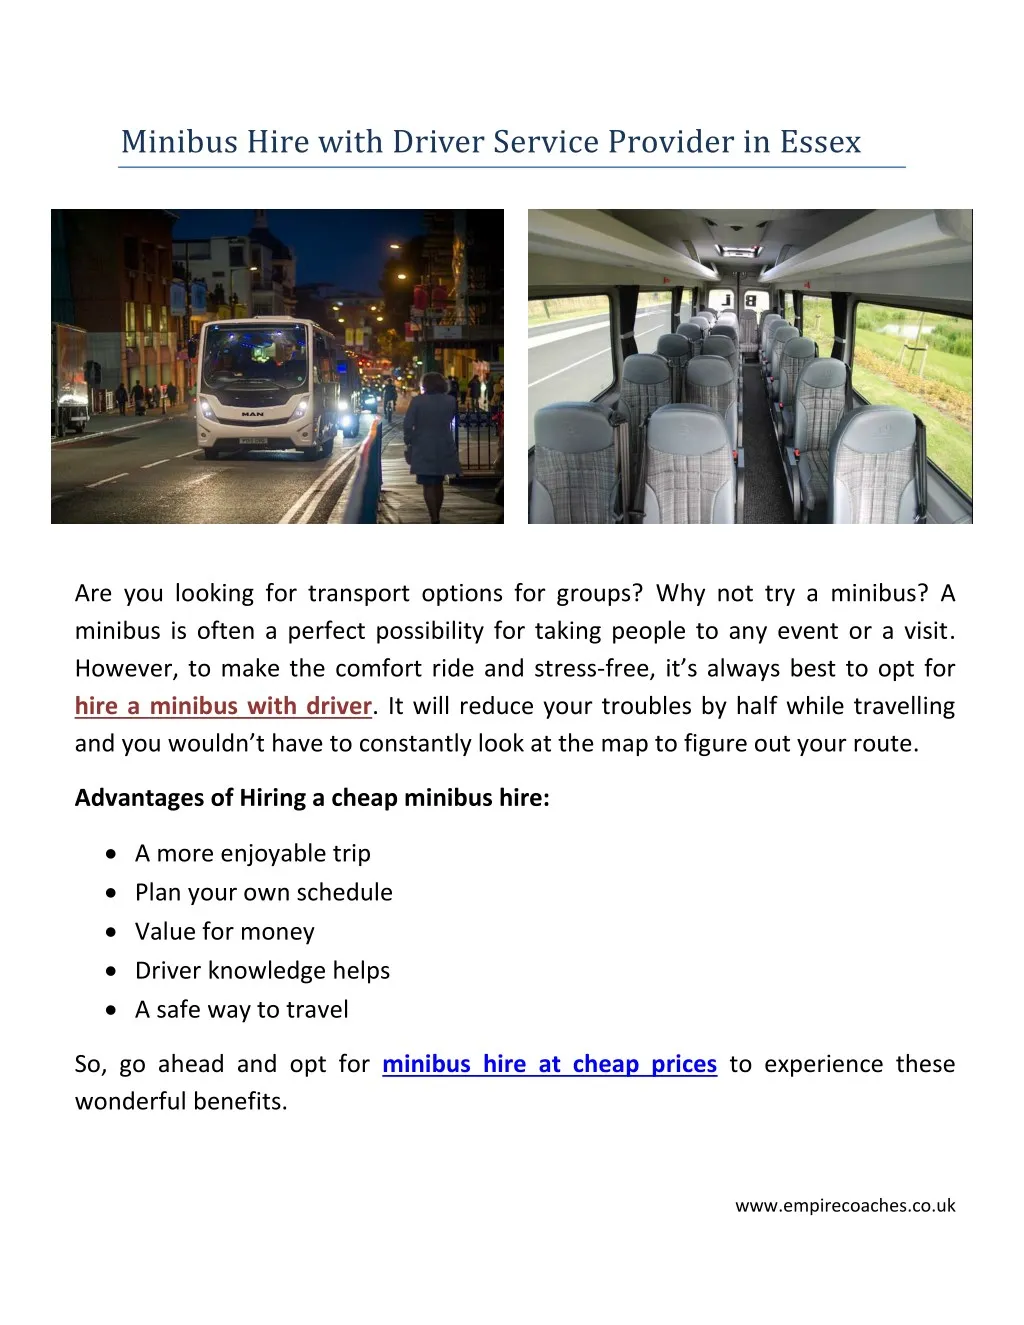 minibus hire with driver service provider in essex